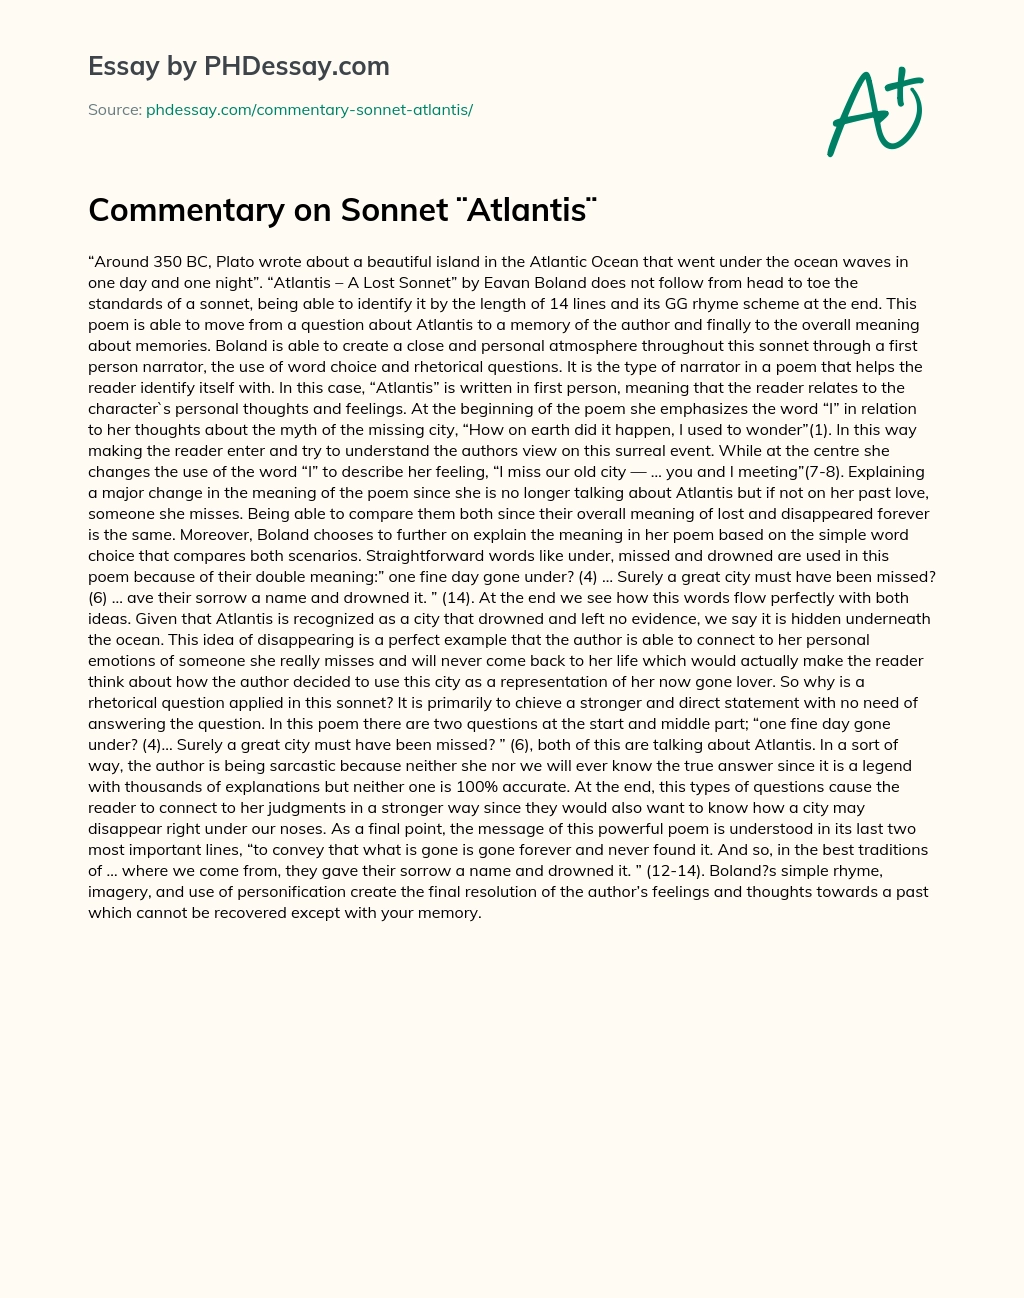 Commentary on Sonnet ¨Atlantis¨ essay